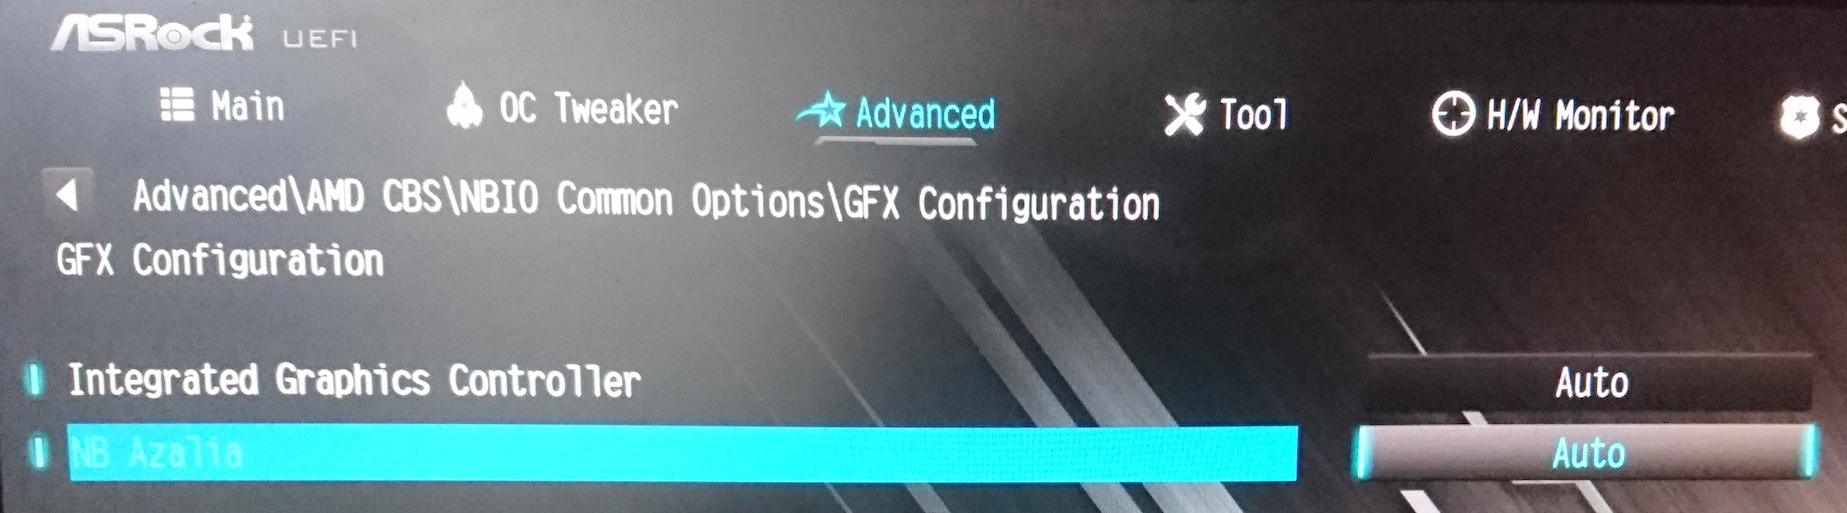 GFX Configuration のデフォルト設定